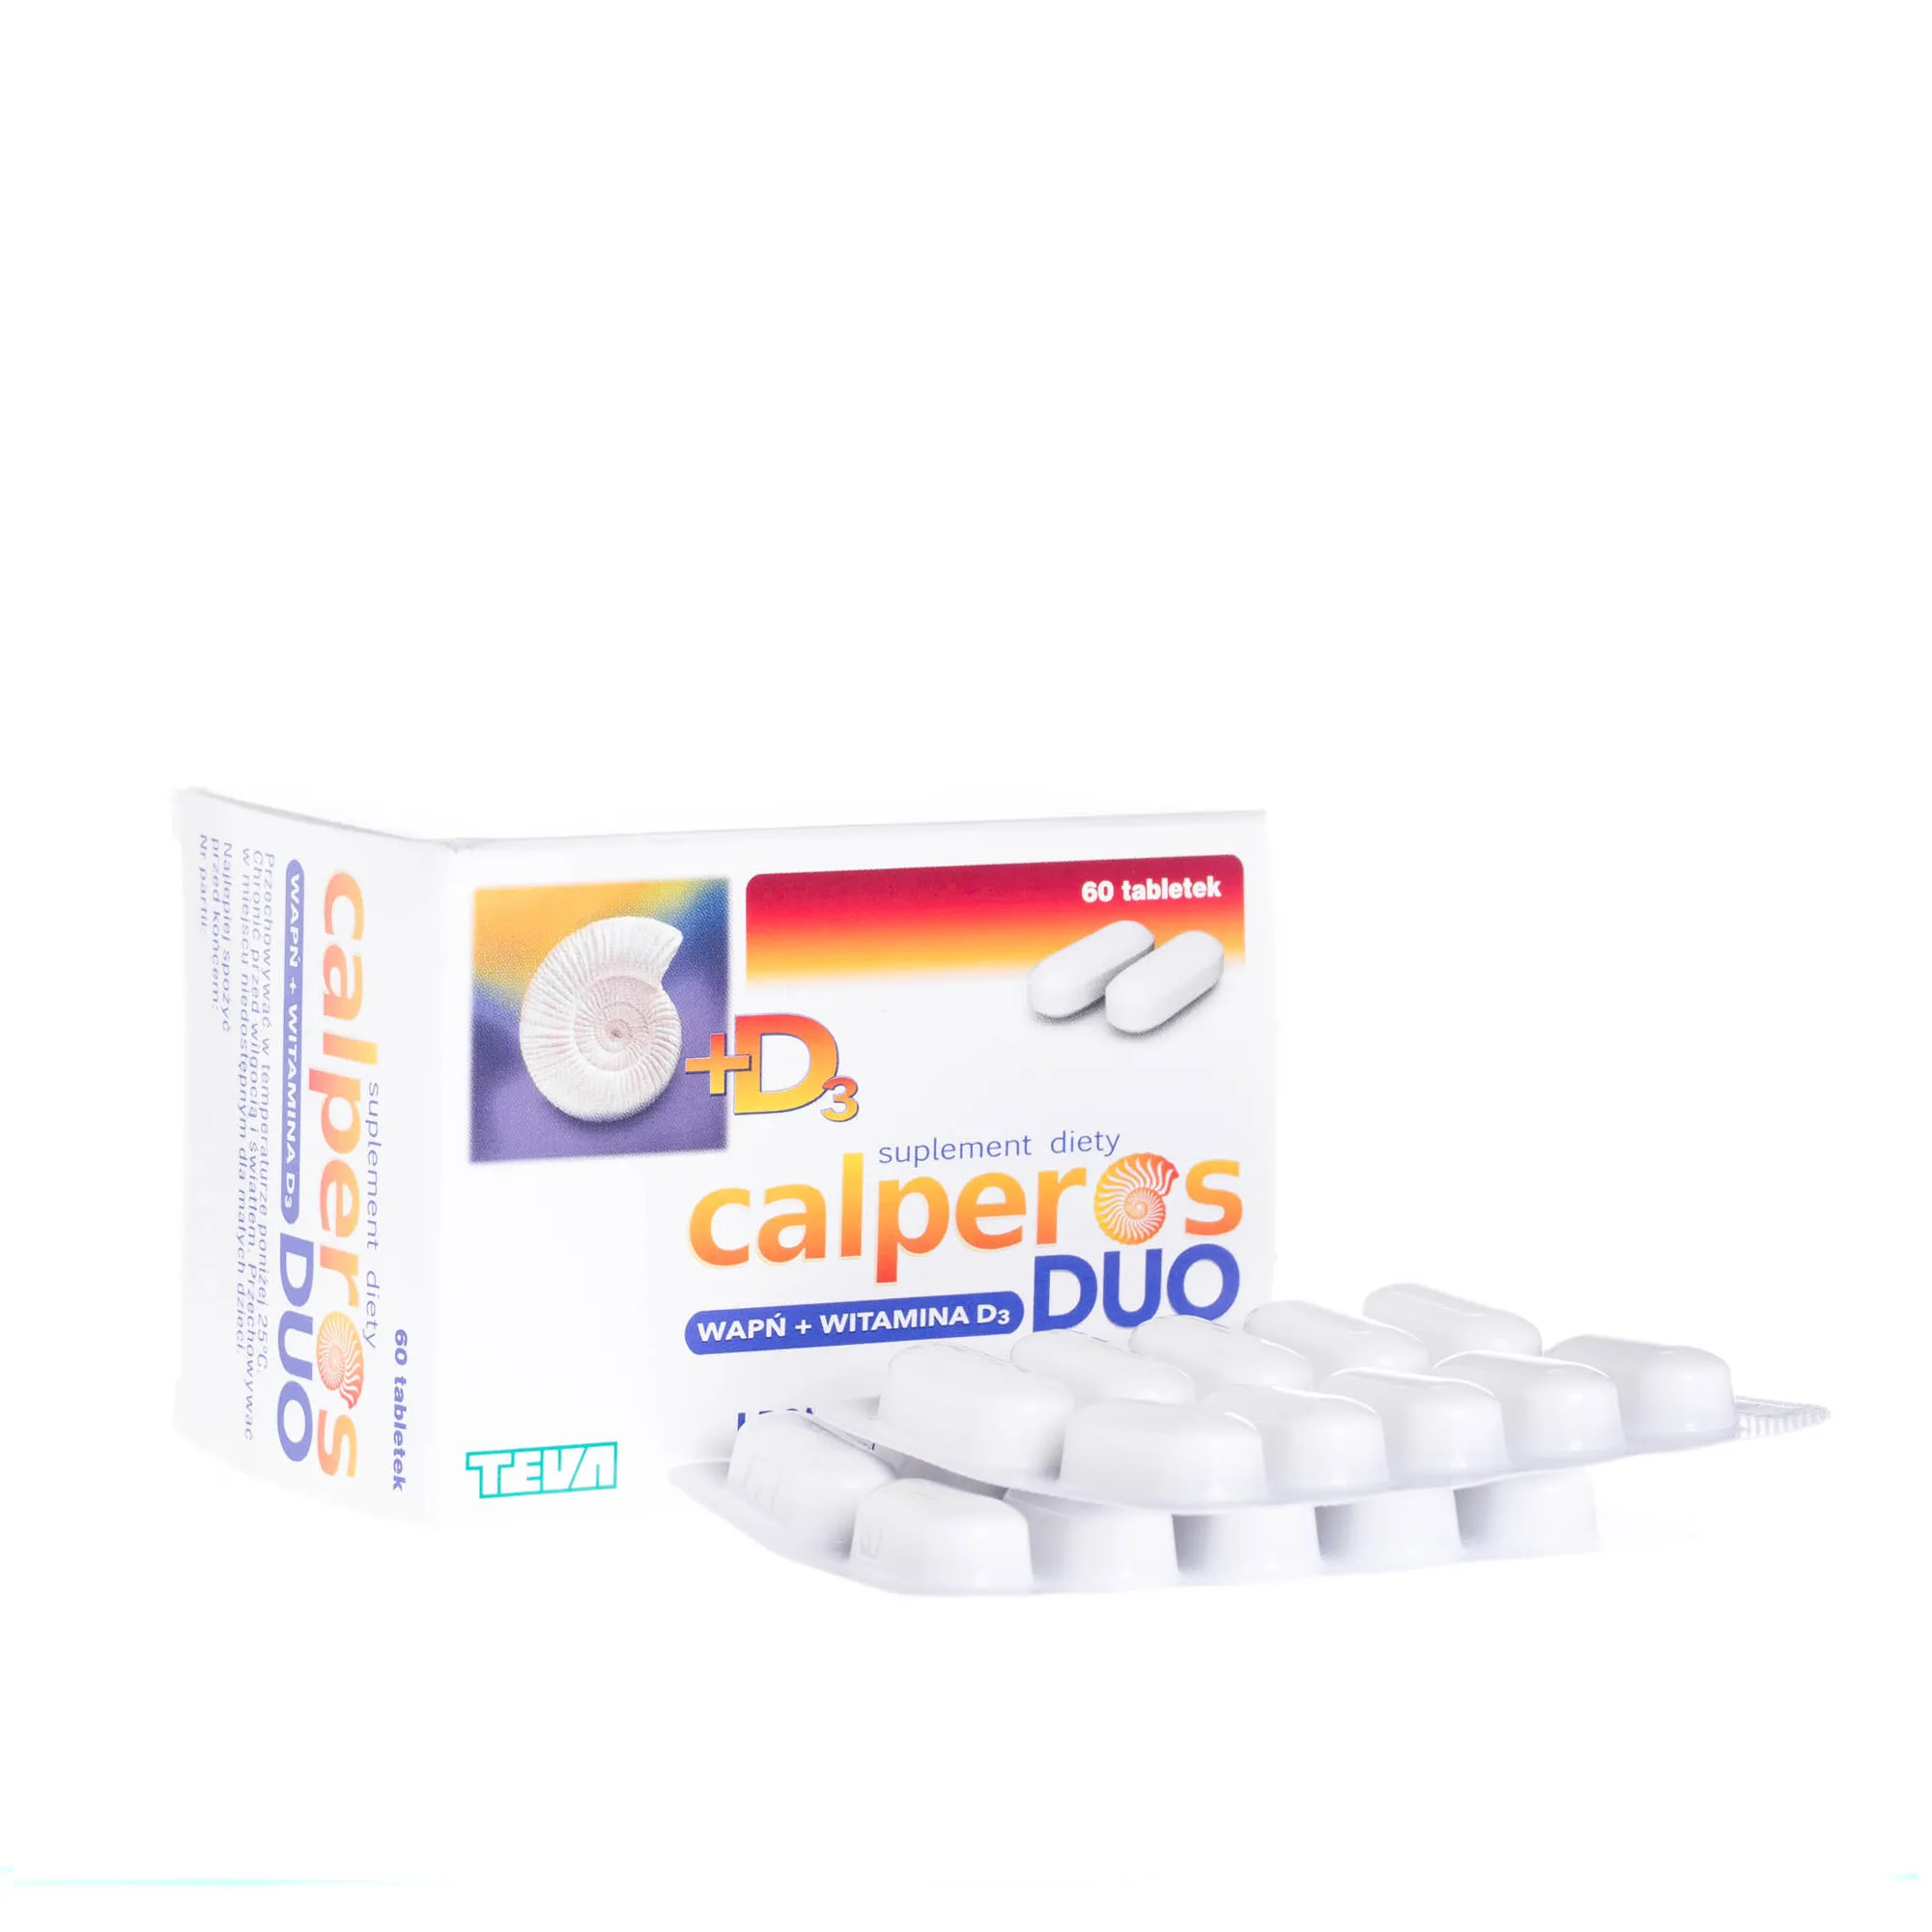 Calperos DUO wapń + wit. D3, 60 tabletek pomagających w utrzymaniu zdrowych i mocnych kości 